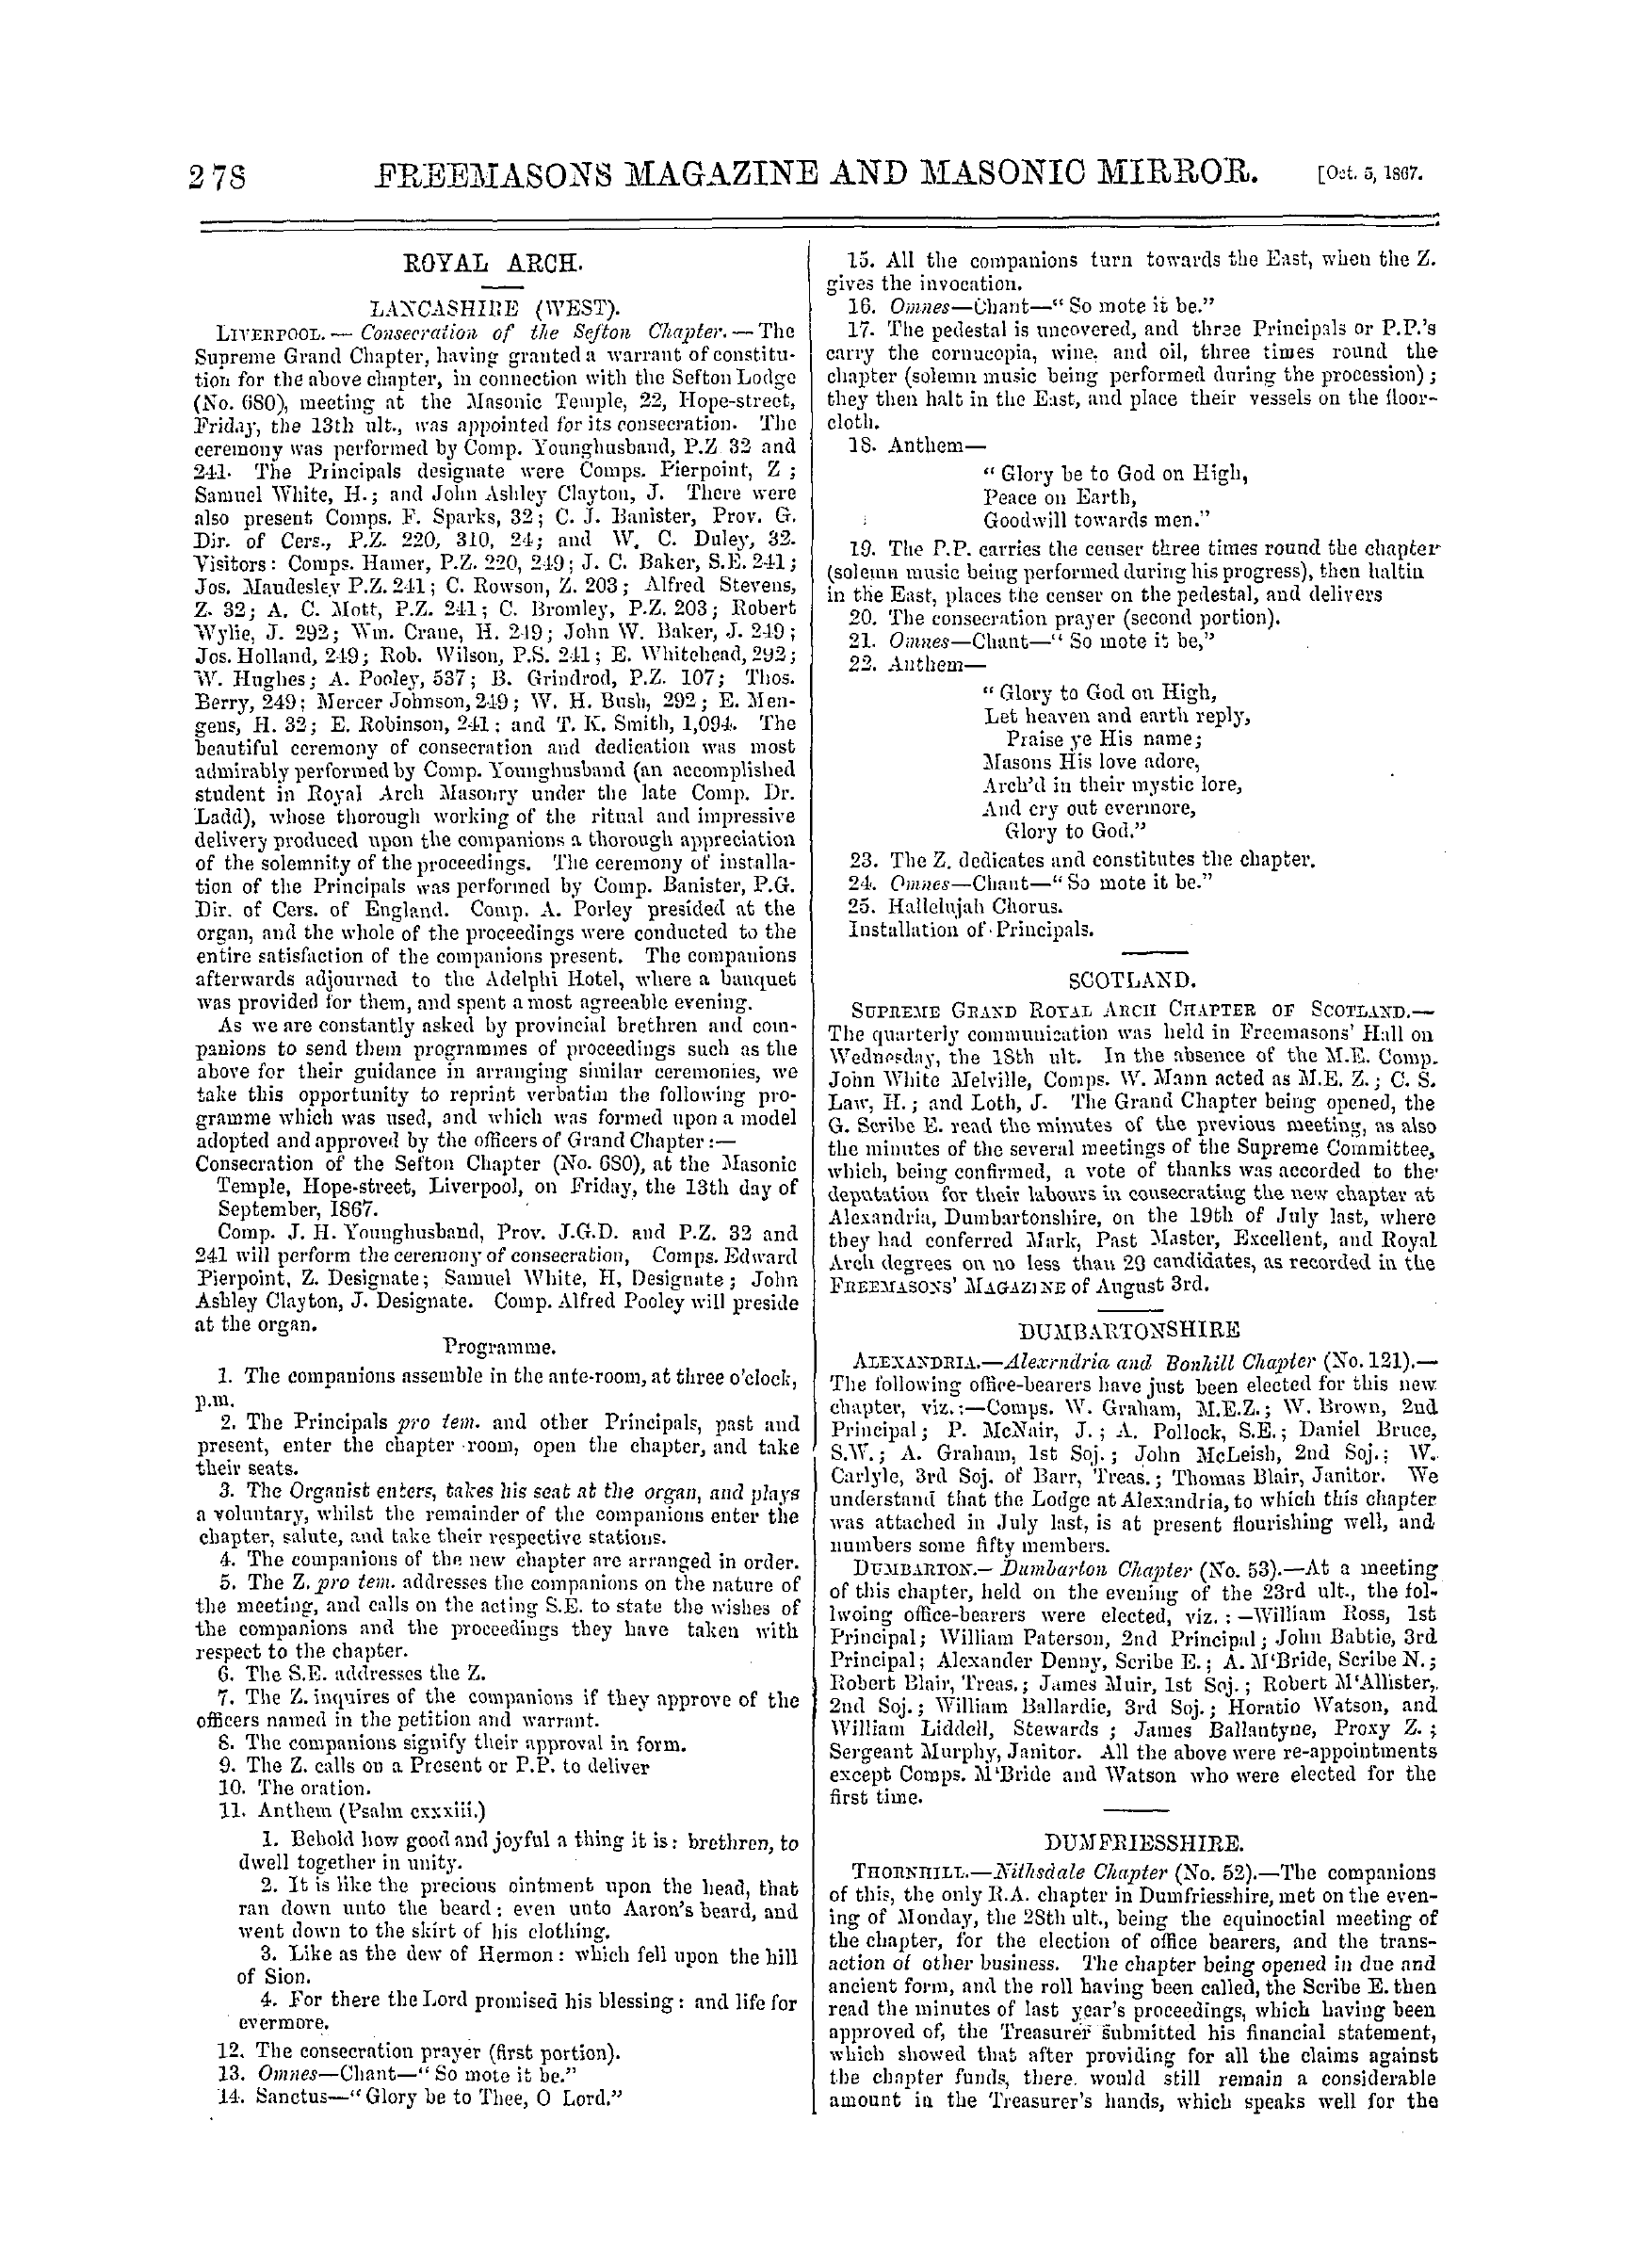 The Freemasons' Monthly Magazine: 1867-10-05 - Canada.